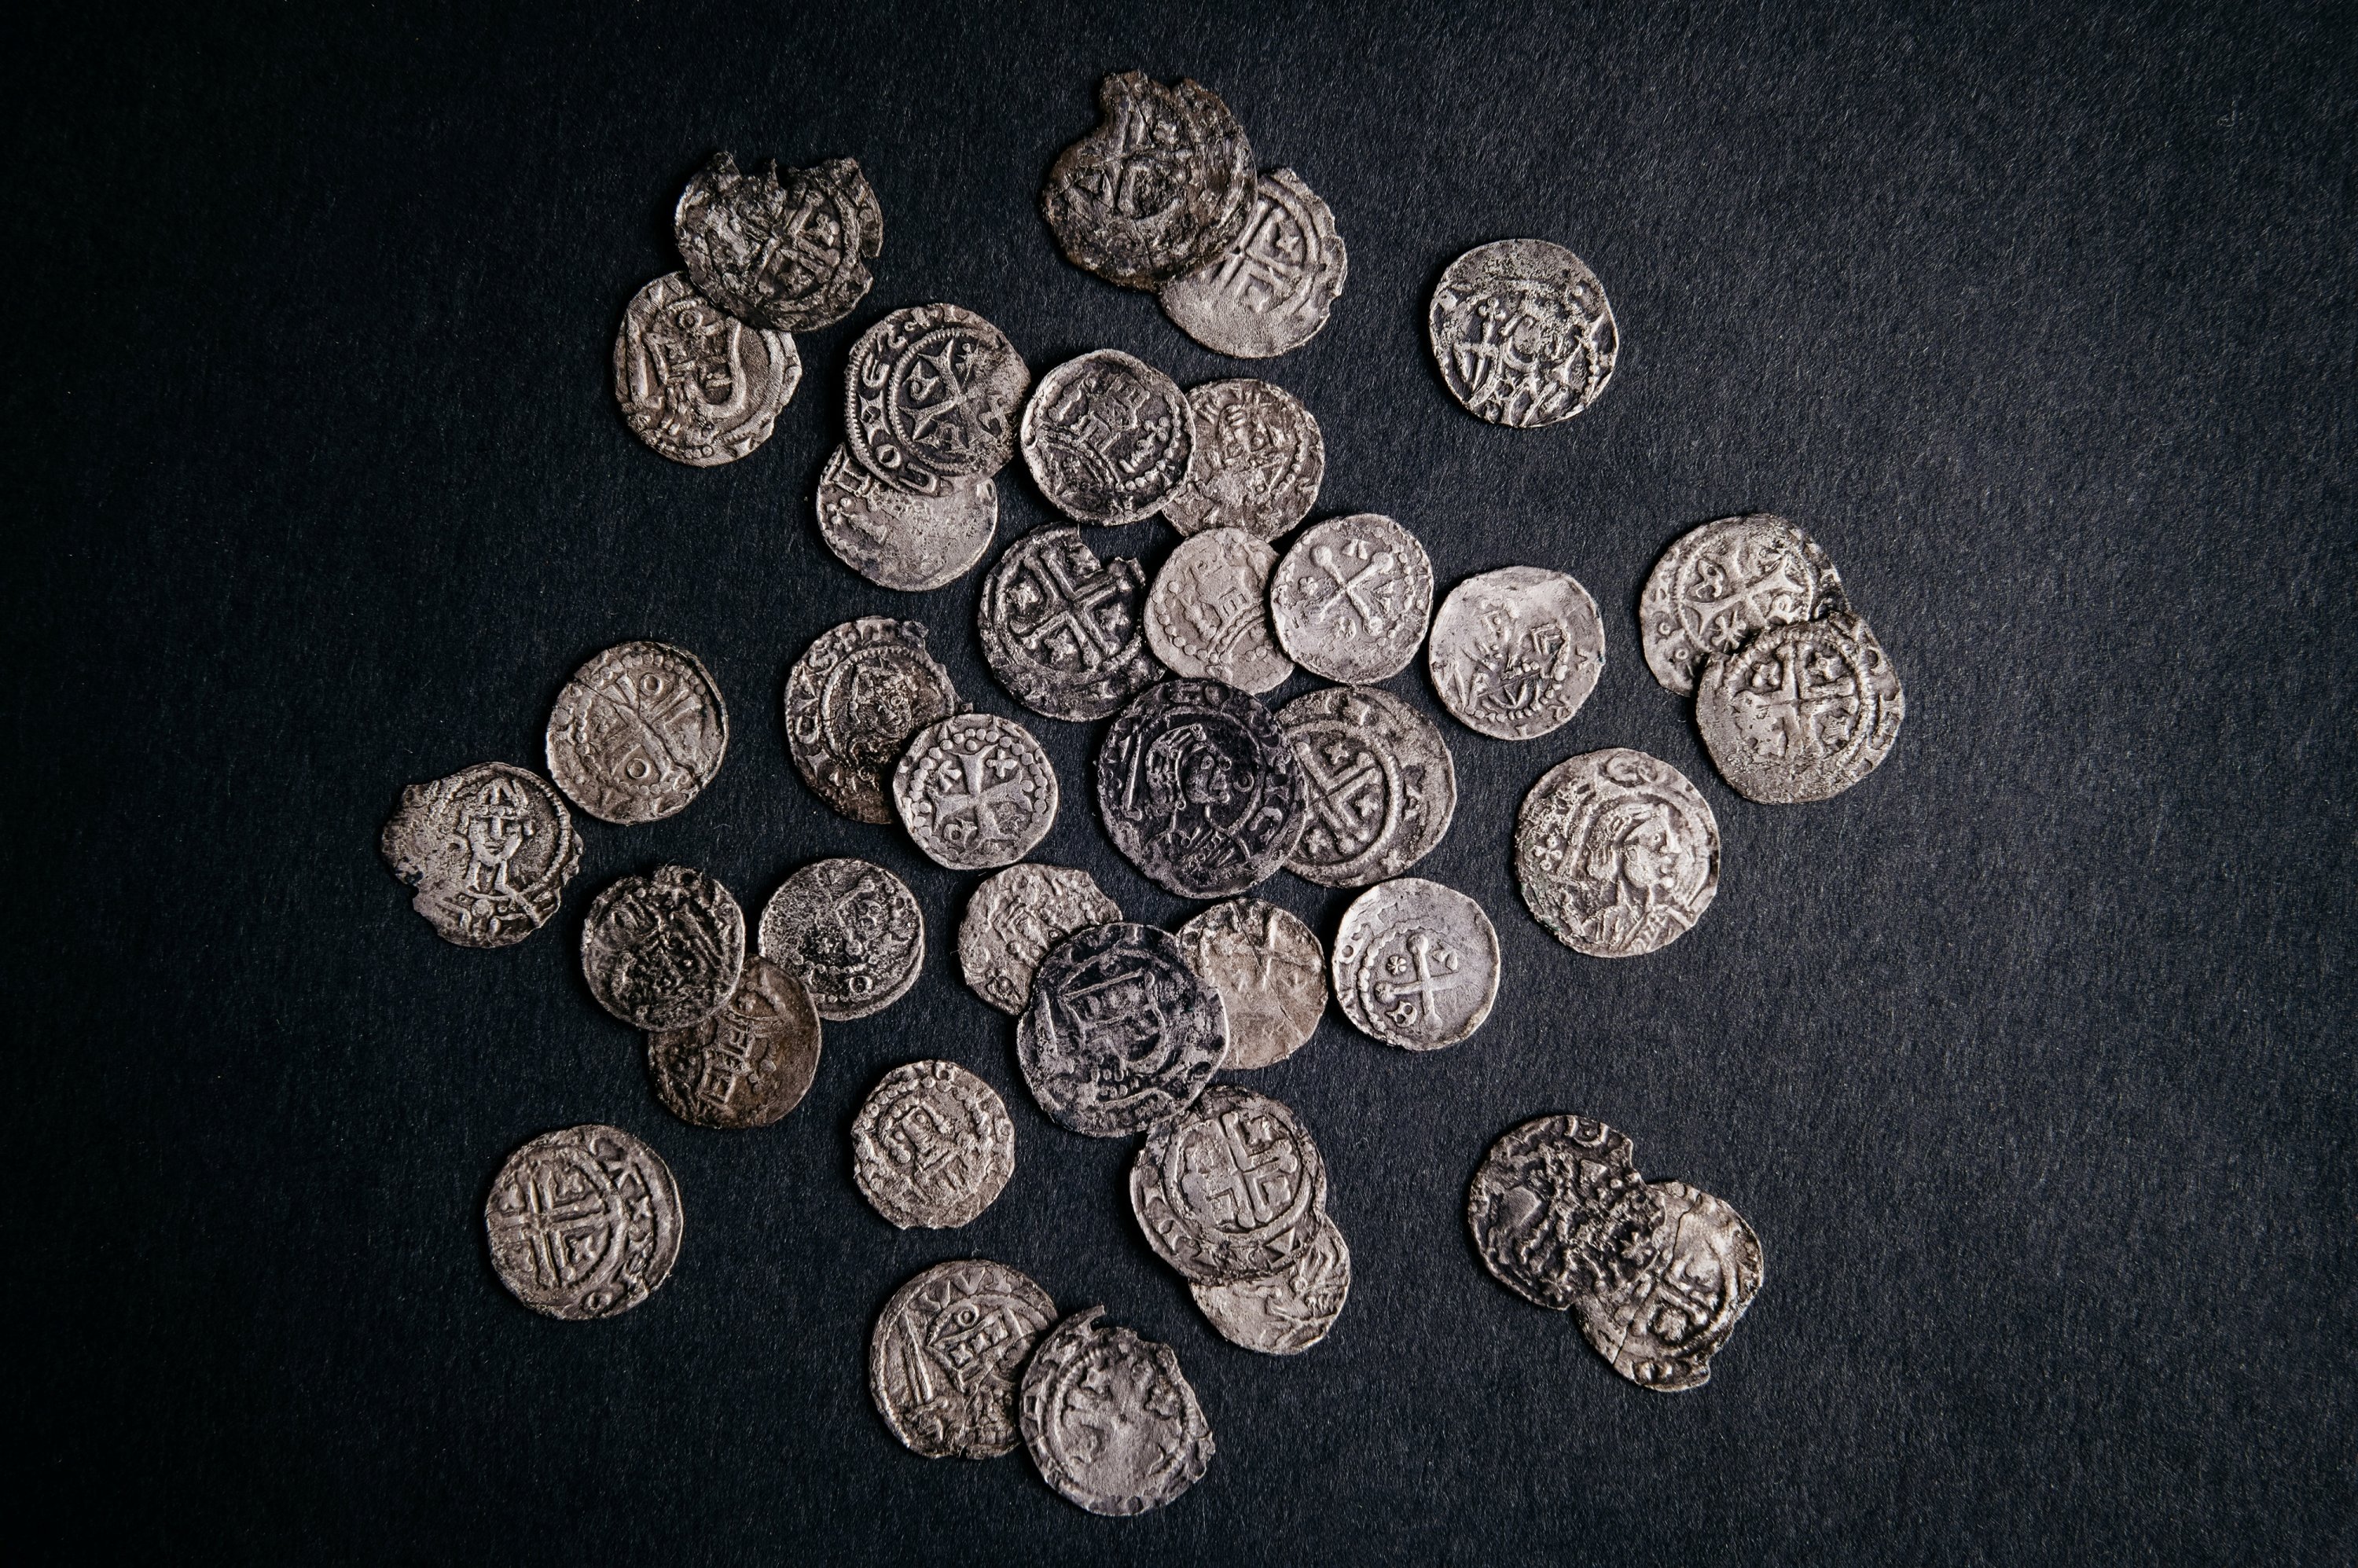 Часть 1000-летнего средневекового сокровища, обнаруженного в Хугвуде, Нидерланды, состоящего из драгоценностей и серебряных монет, показана на этом недатированном раздаточном изображении.  (Фото Рейтер)